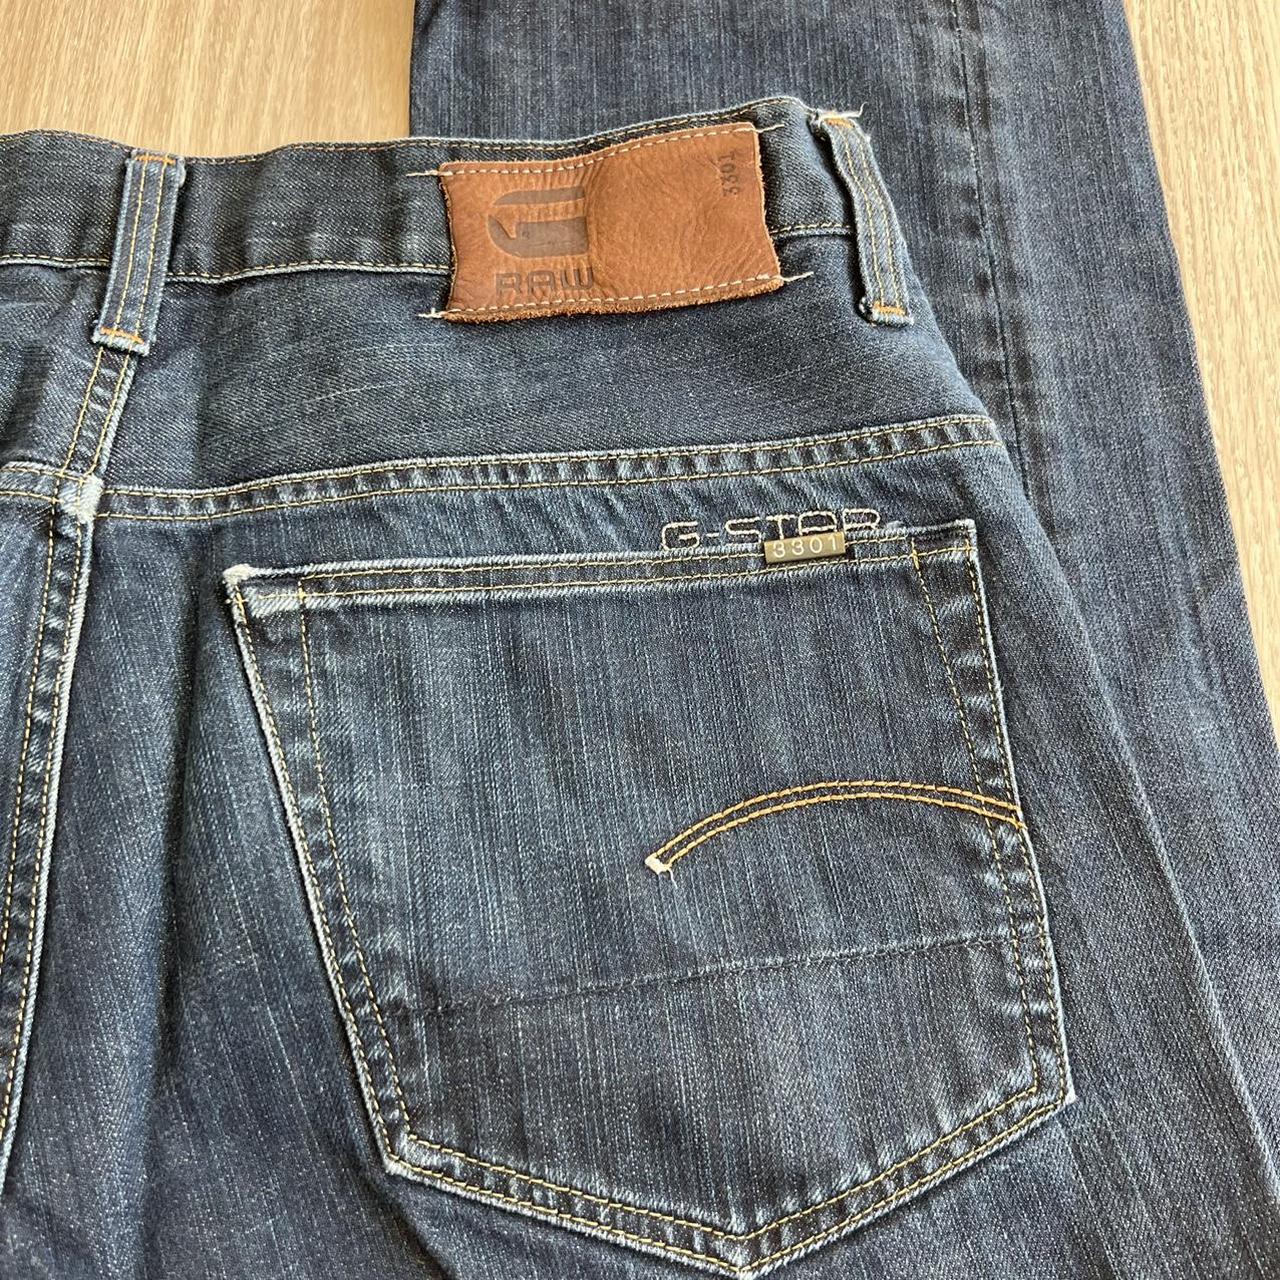 G-Star Raw denim jeans Size 34 Inseam 33” Outseam... - Depop